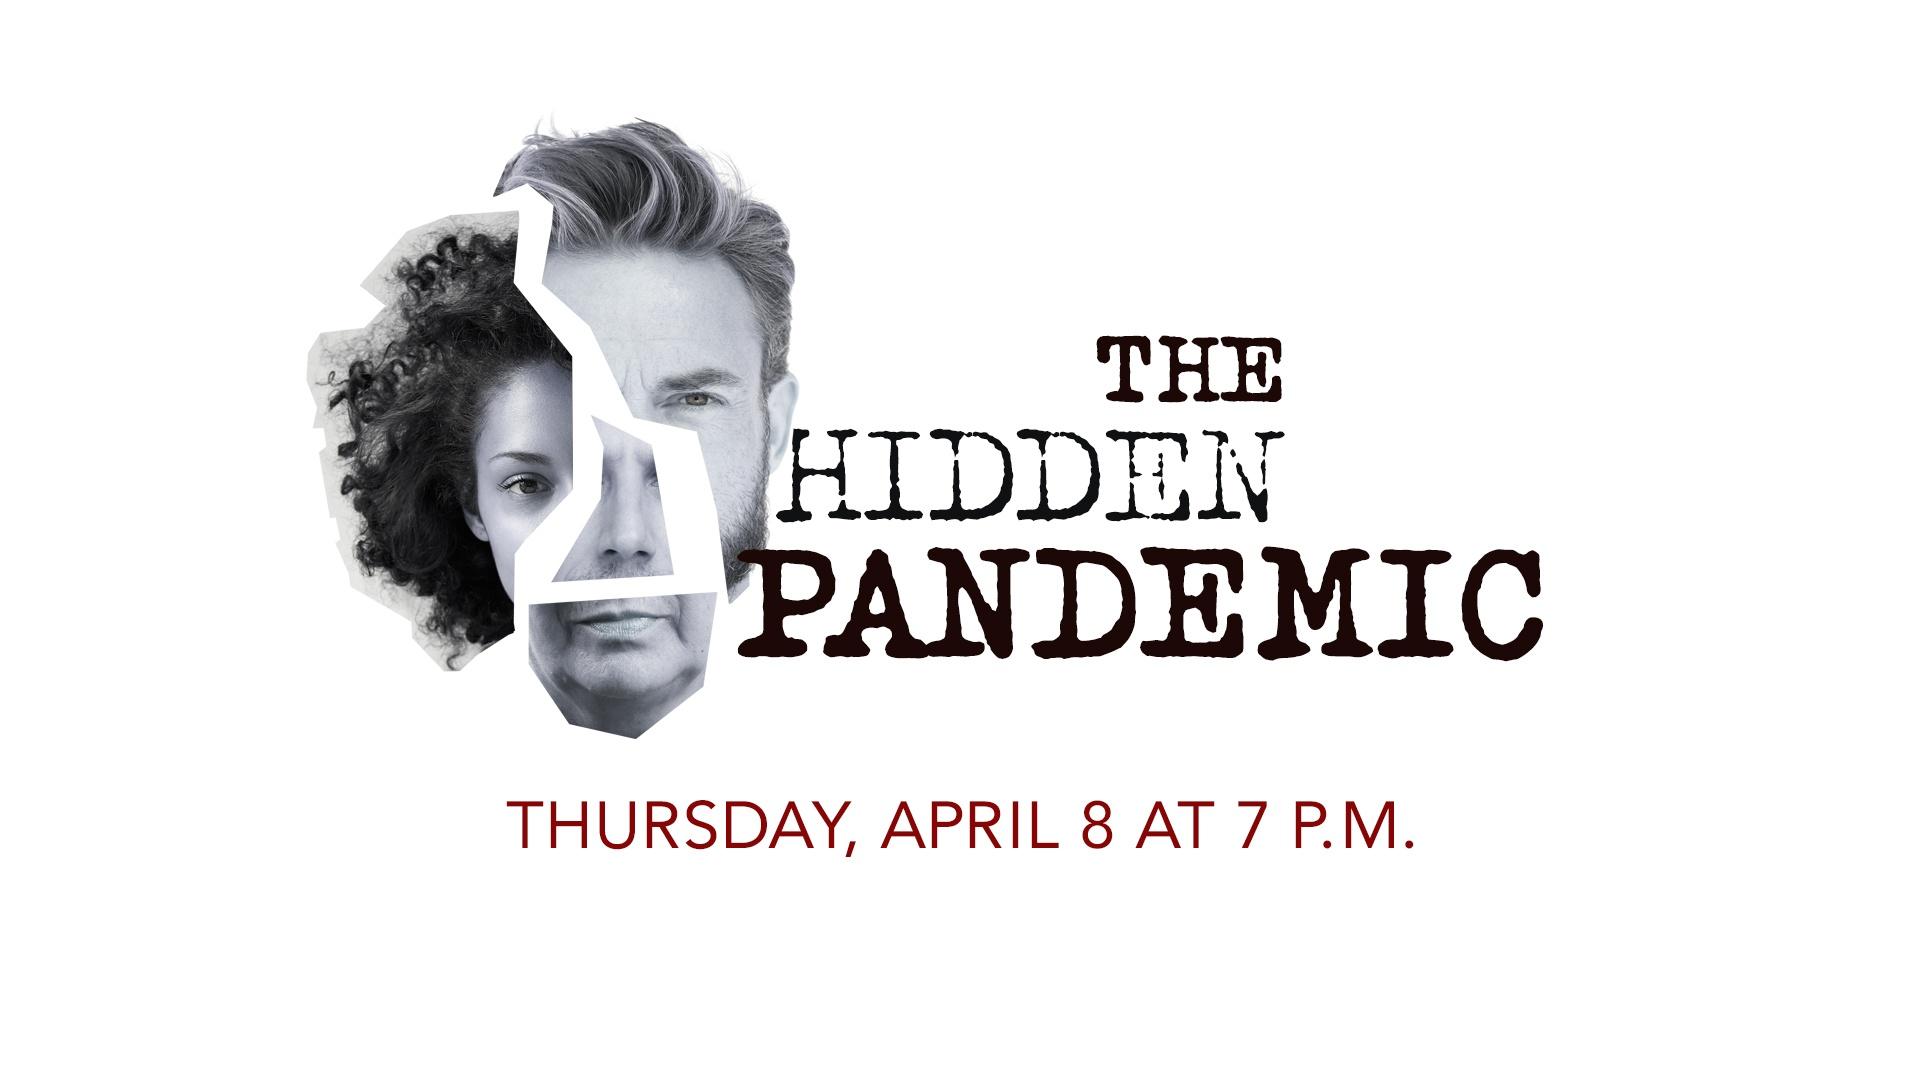 The Hidden Pandemic - Thursday, April 8 at 7 p.m.